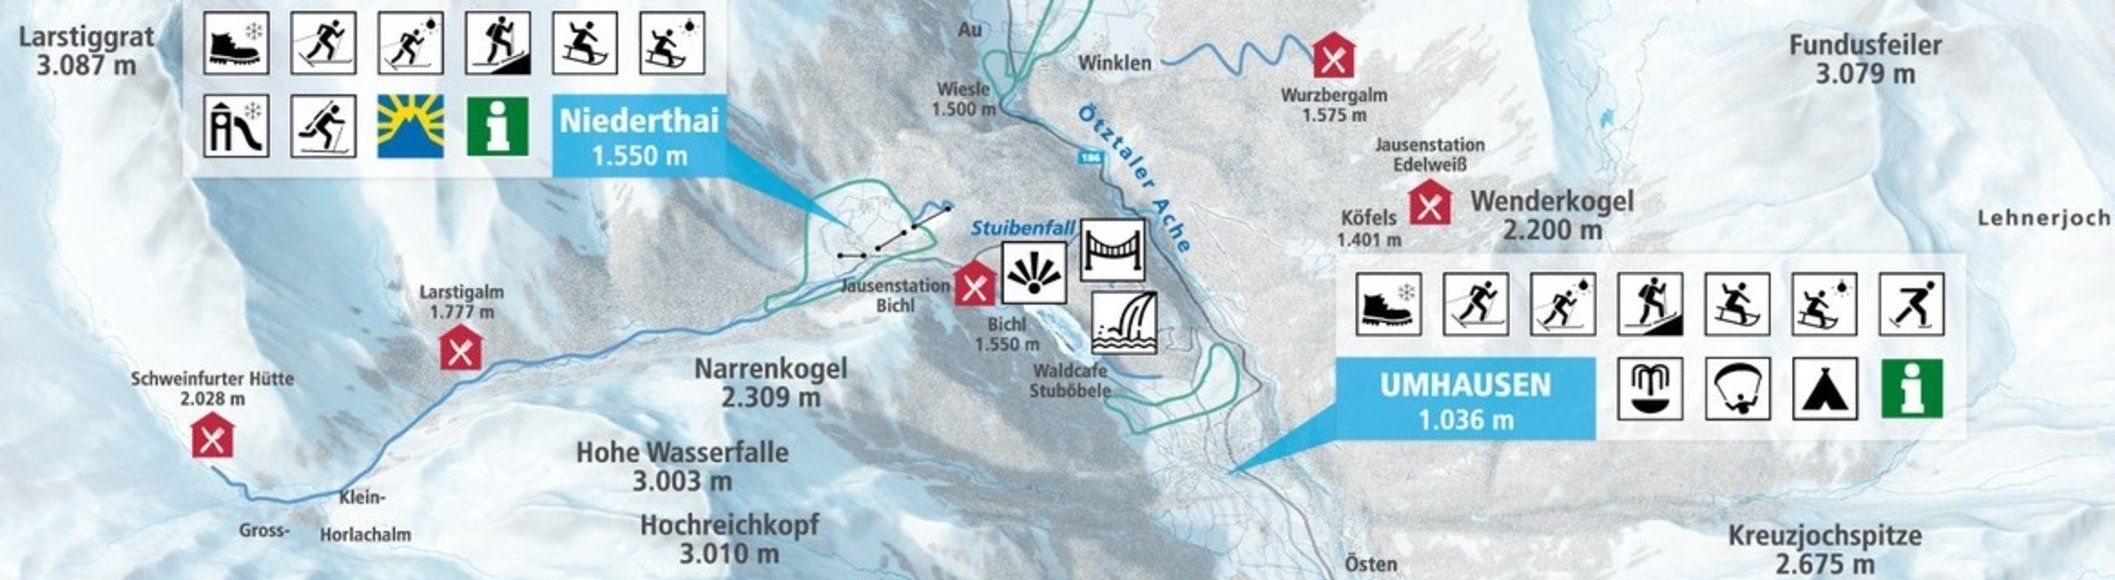 Pistenplan / Karte Skigebiet Umhausen, Österreich